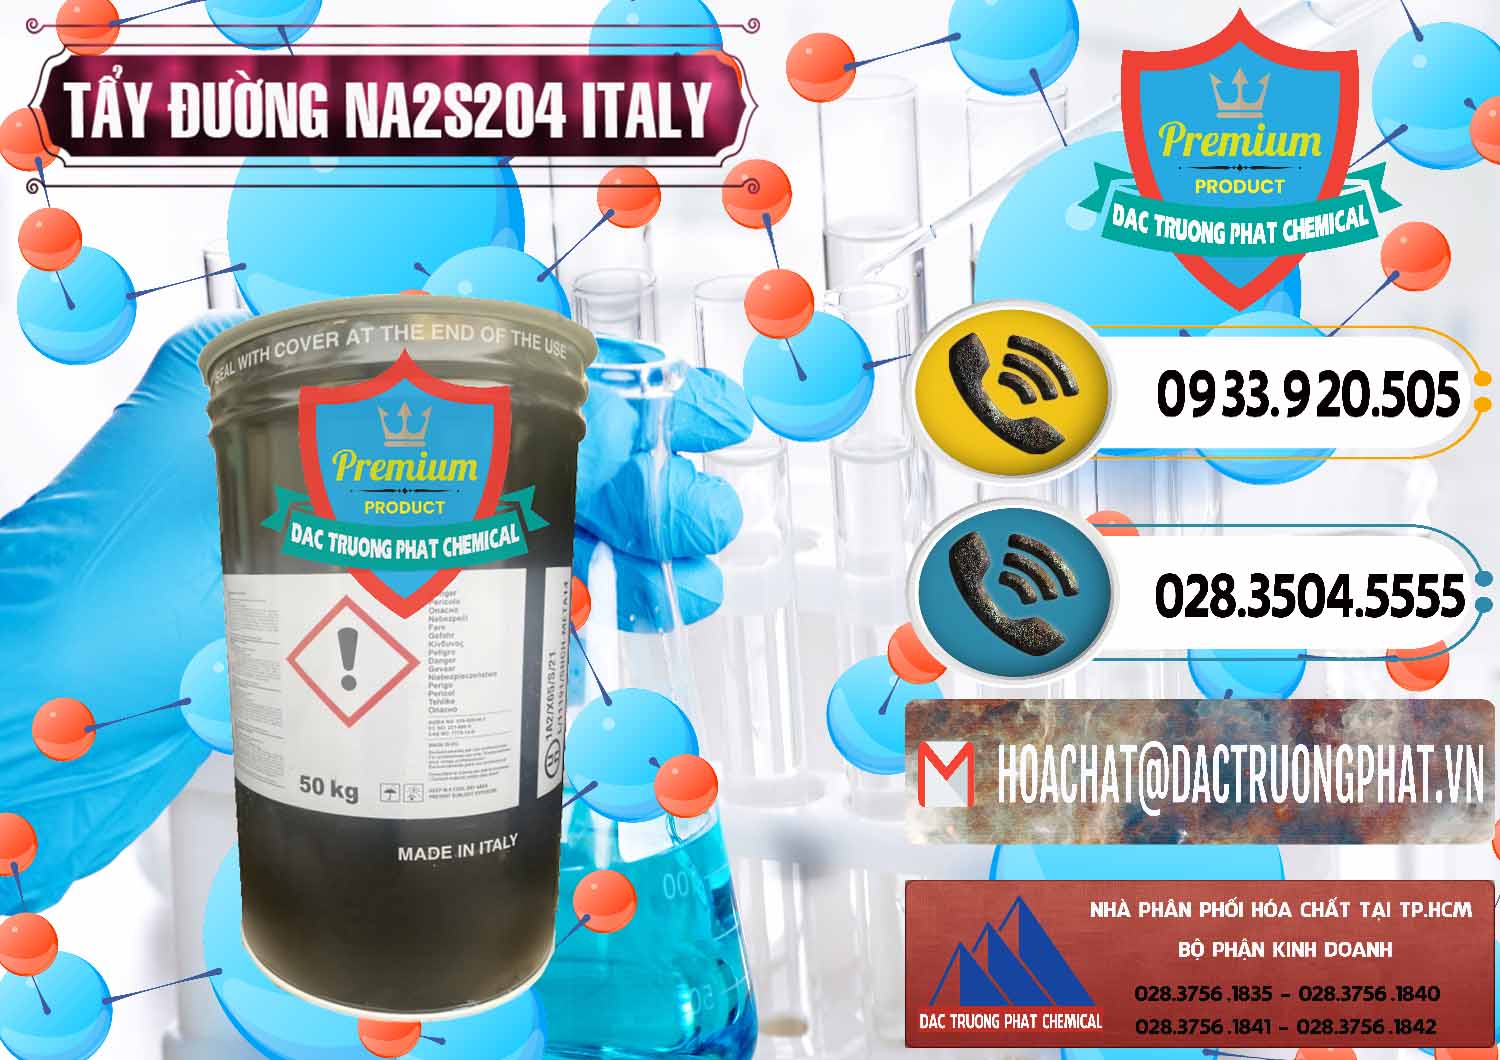 Đơn vị chuyên kinh doanh & bán Tẩy Đường - NA2S2O4 Ý Italy - 0422 - Nơi chuyên cung cấp & bán hóa chất tại TP.HCM - hoachatdetnhuom.vn